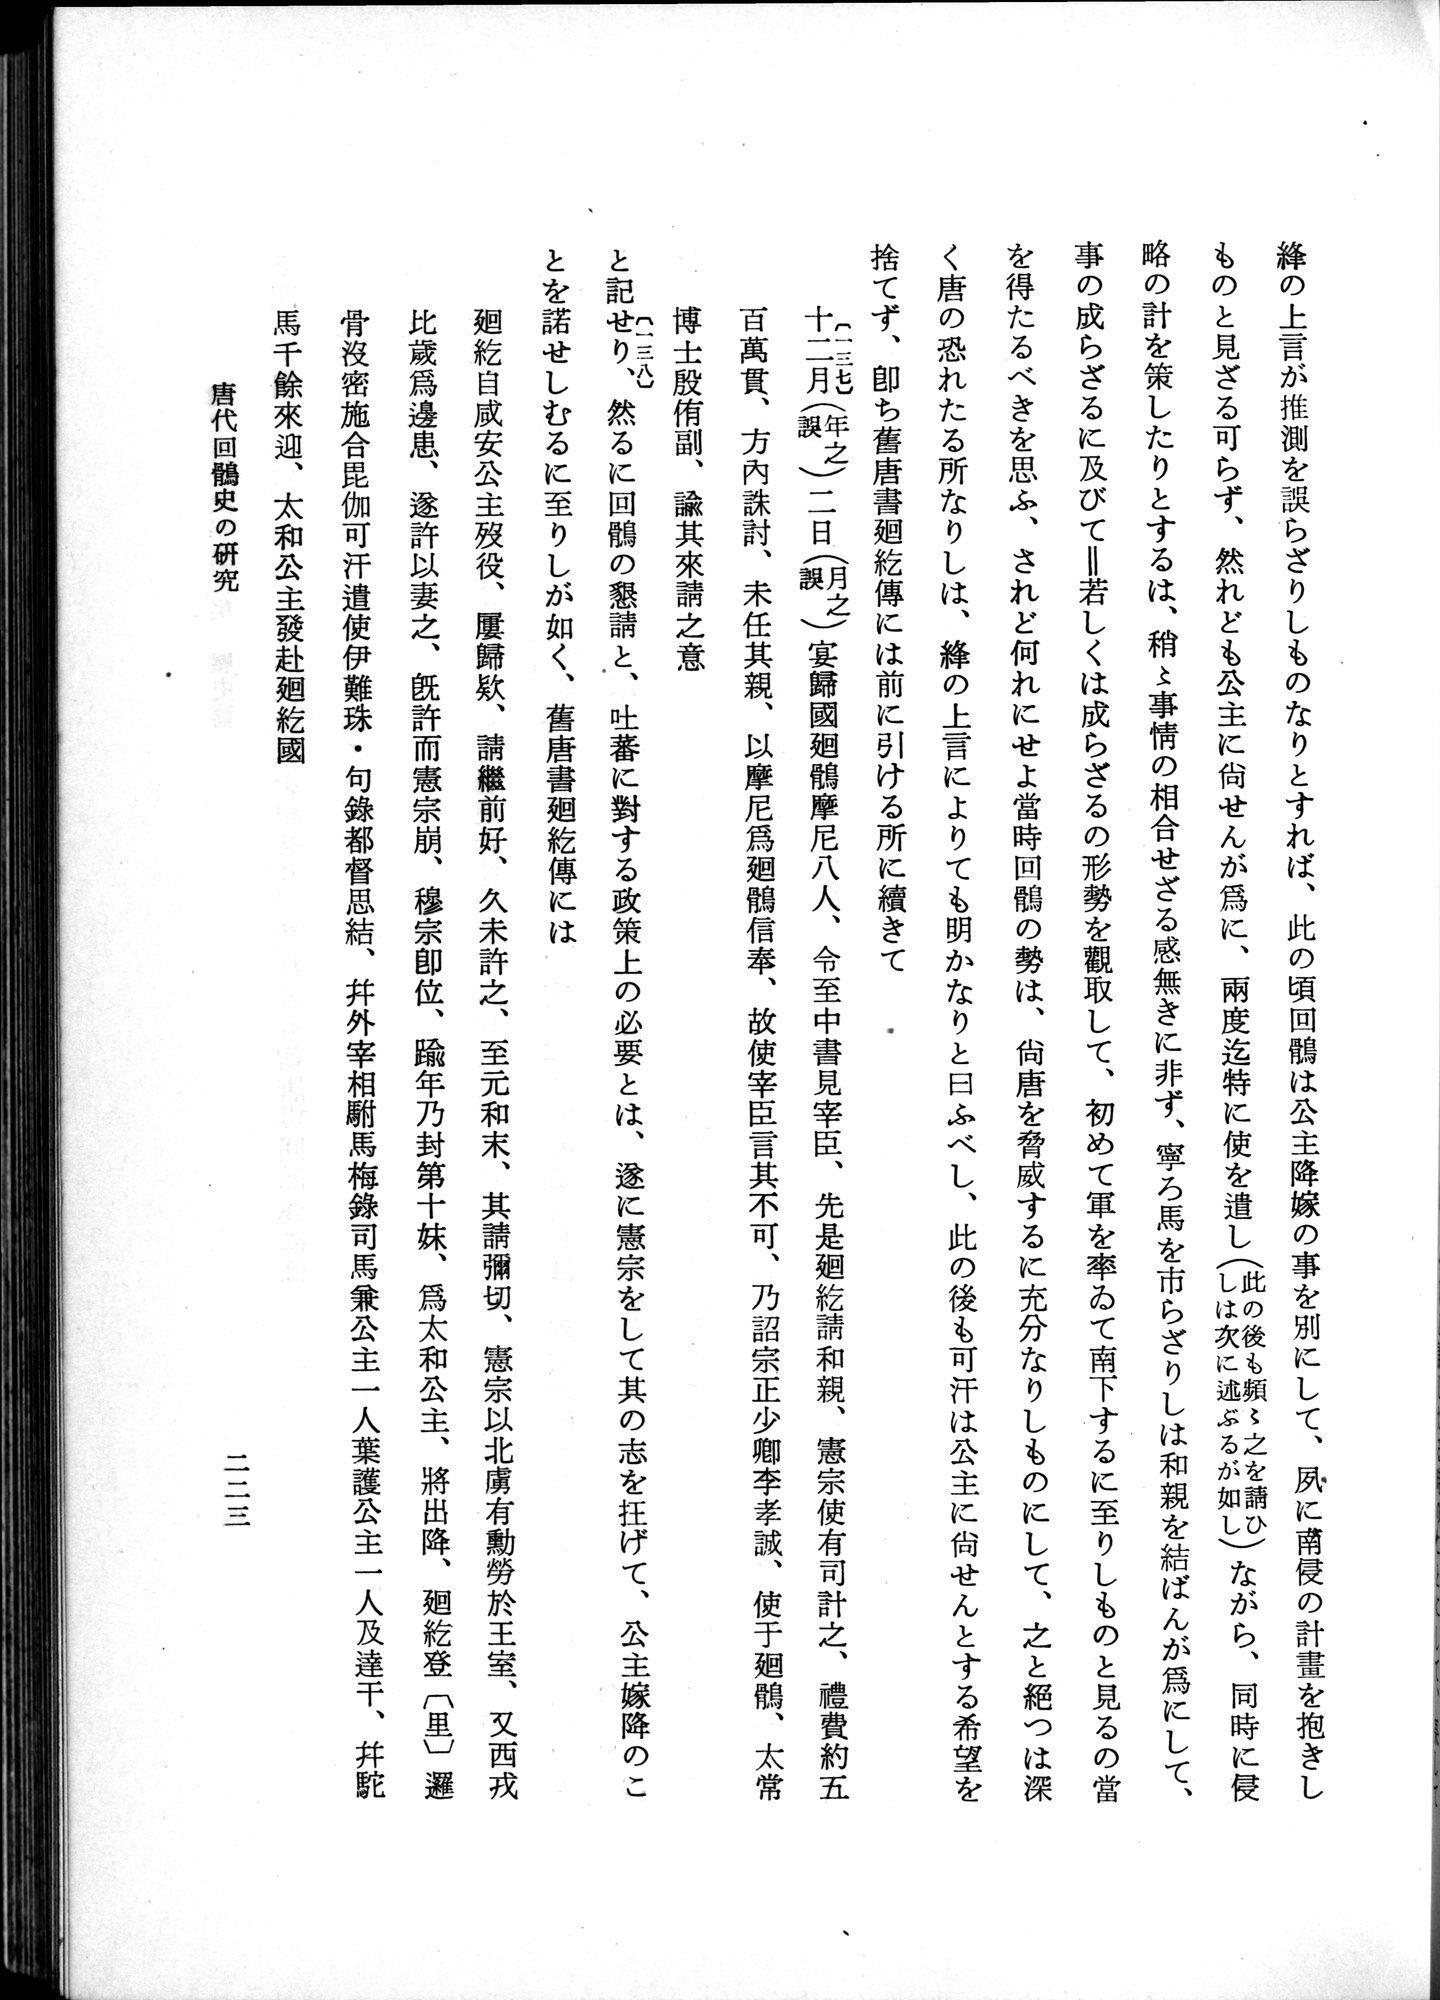 羽田博士史学論文集 : vol.1 / Page 261 (Grayscale High Resolution Image)